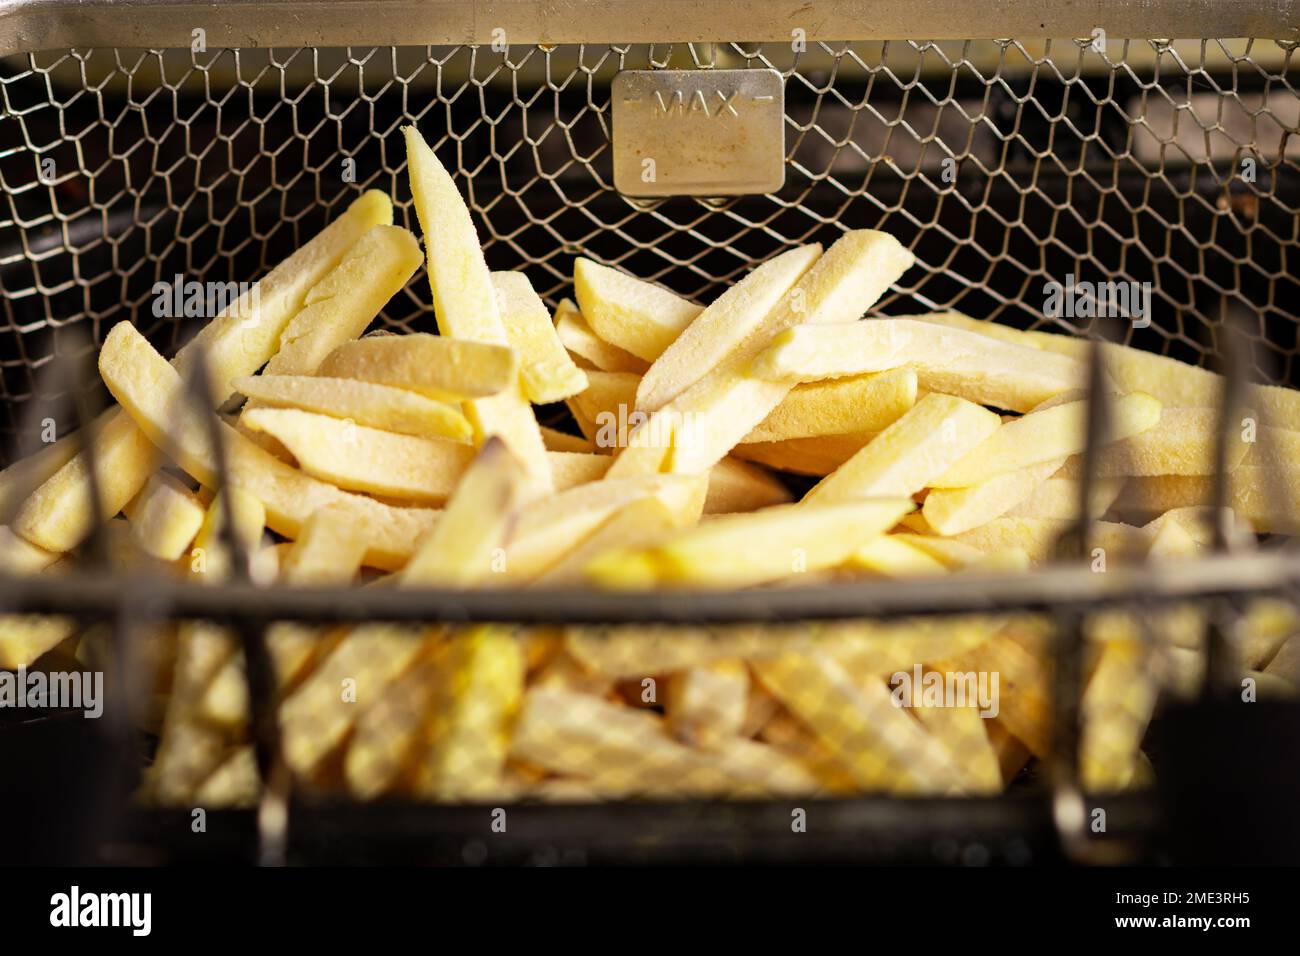 Patatas fritas congeladas en una cesta de la freidora. Producto semiacabado  a partir de patatas congeladas. Preparación para freír Fotografía de stock  - Alamy